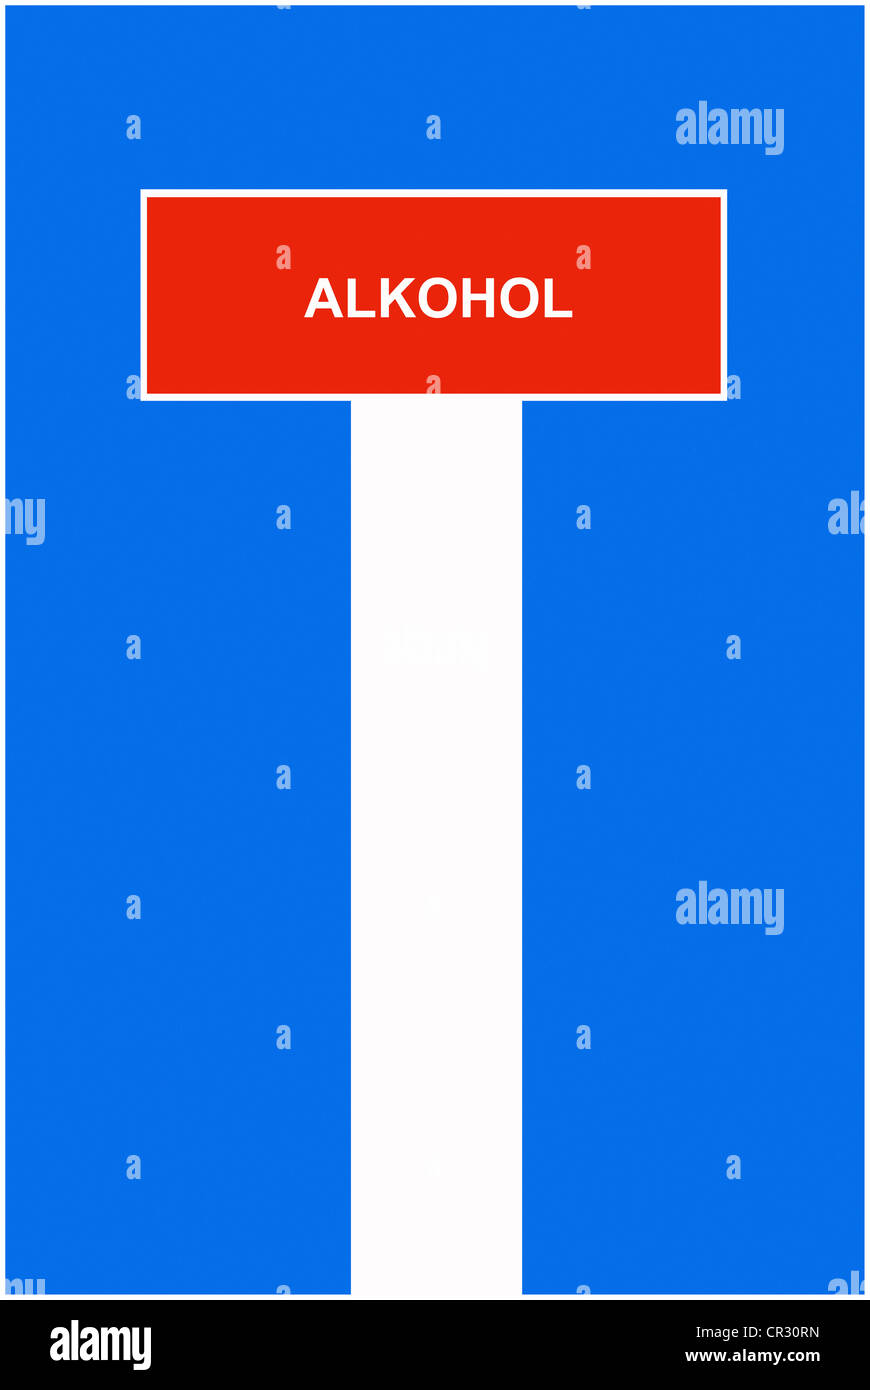 Immagine simbolica, dead end street, cul-de-sac, alcol, tedesco per "alcool' Foto Stock